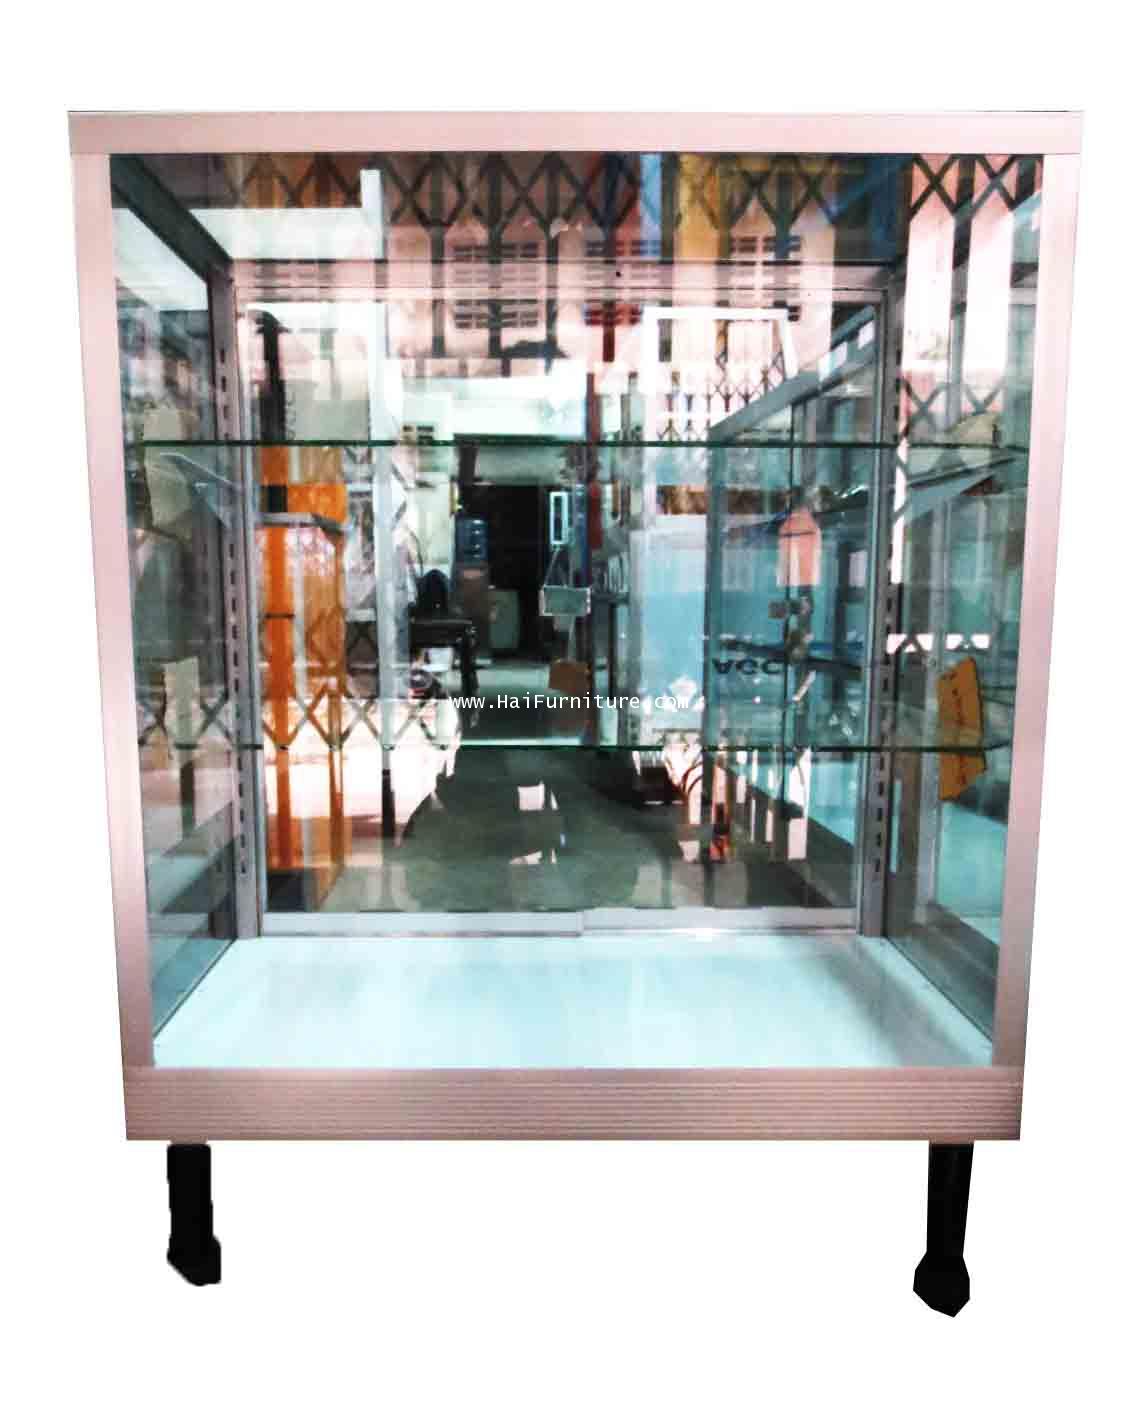 S2.5L ตู้โชว์ ตู้กระจกแสดงสินค้า ขอบอลูมิเนียม 2.5 ฟุต ชั้นปรับ 78*42*100 ซม. 1